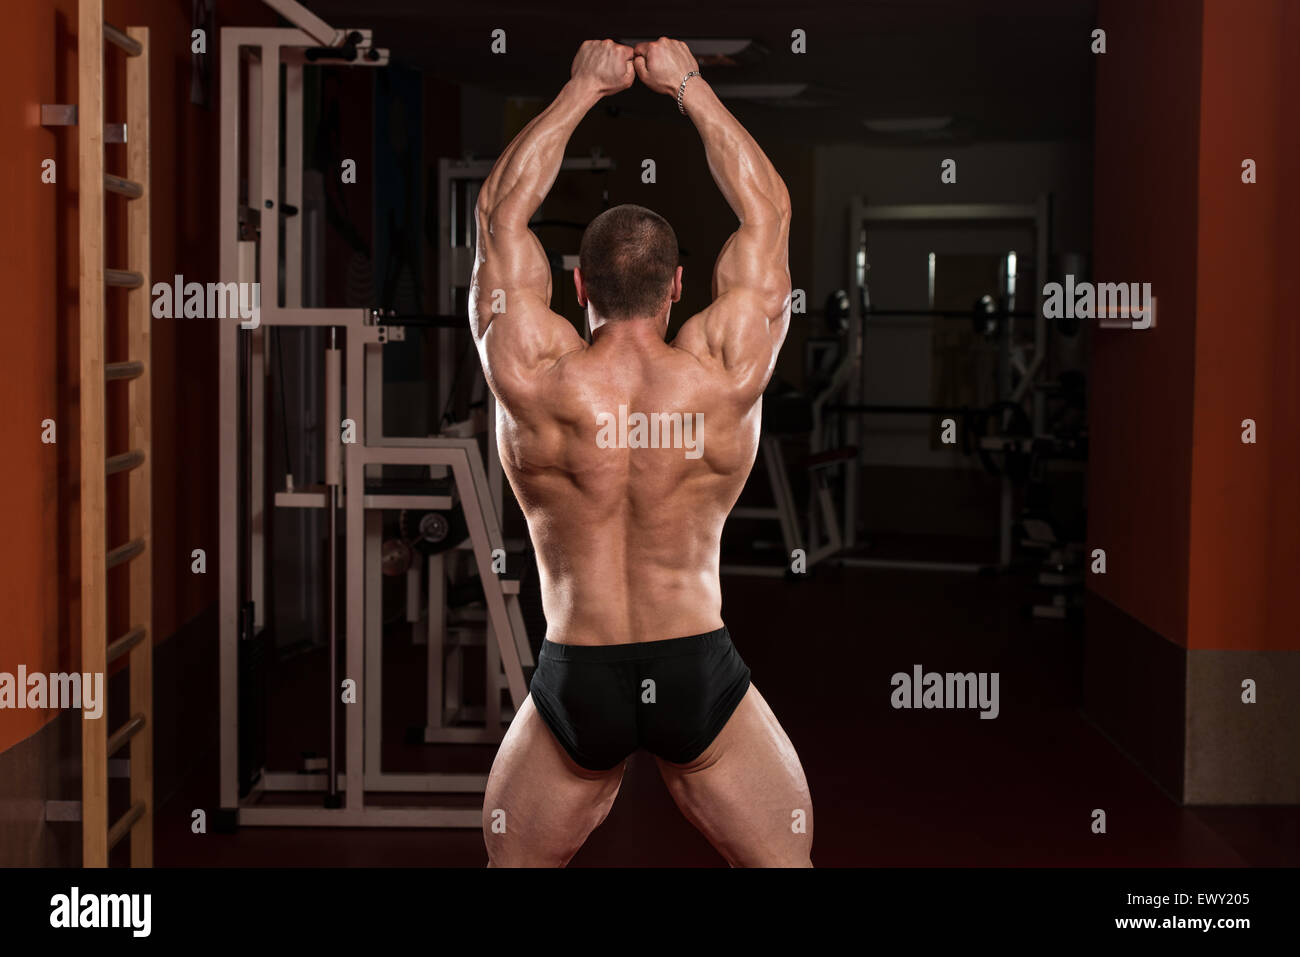 Best Bodybuilding Pose of Arnold SCHWARZENEGGER | FitnessCha… | Flickr